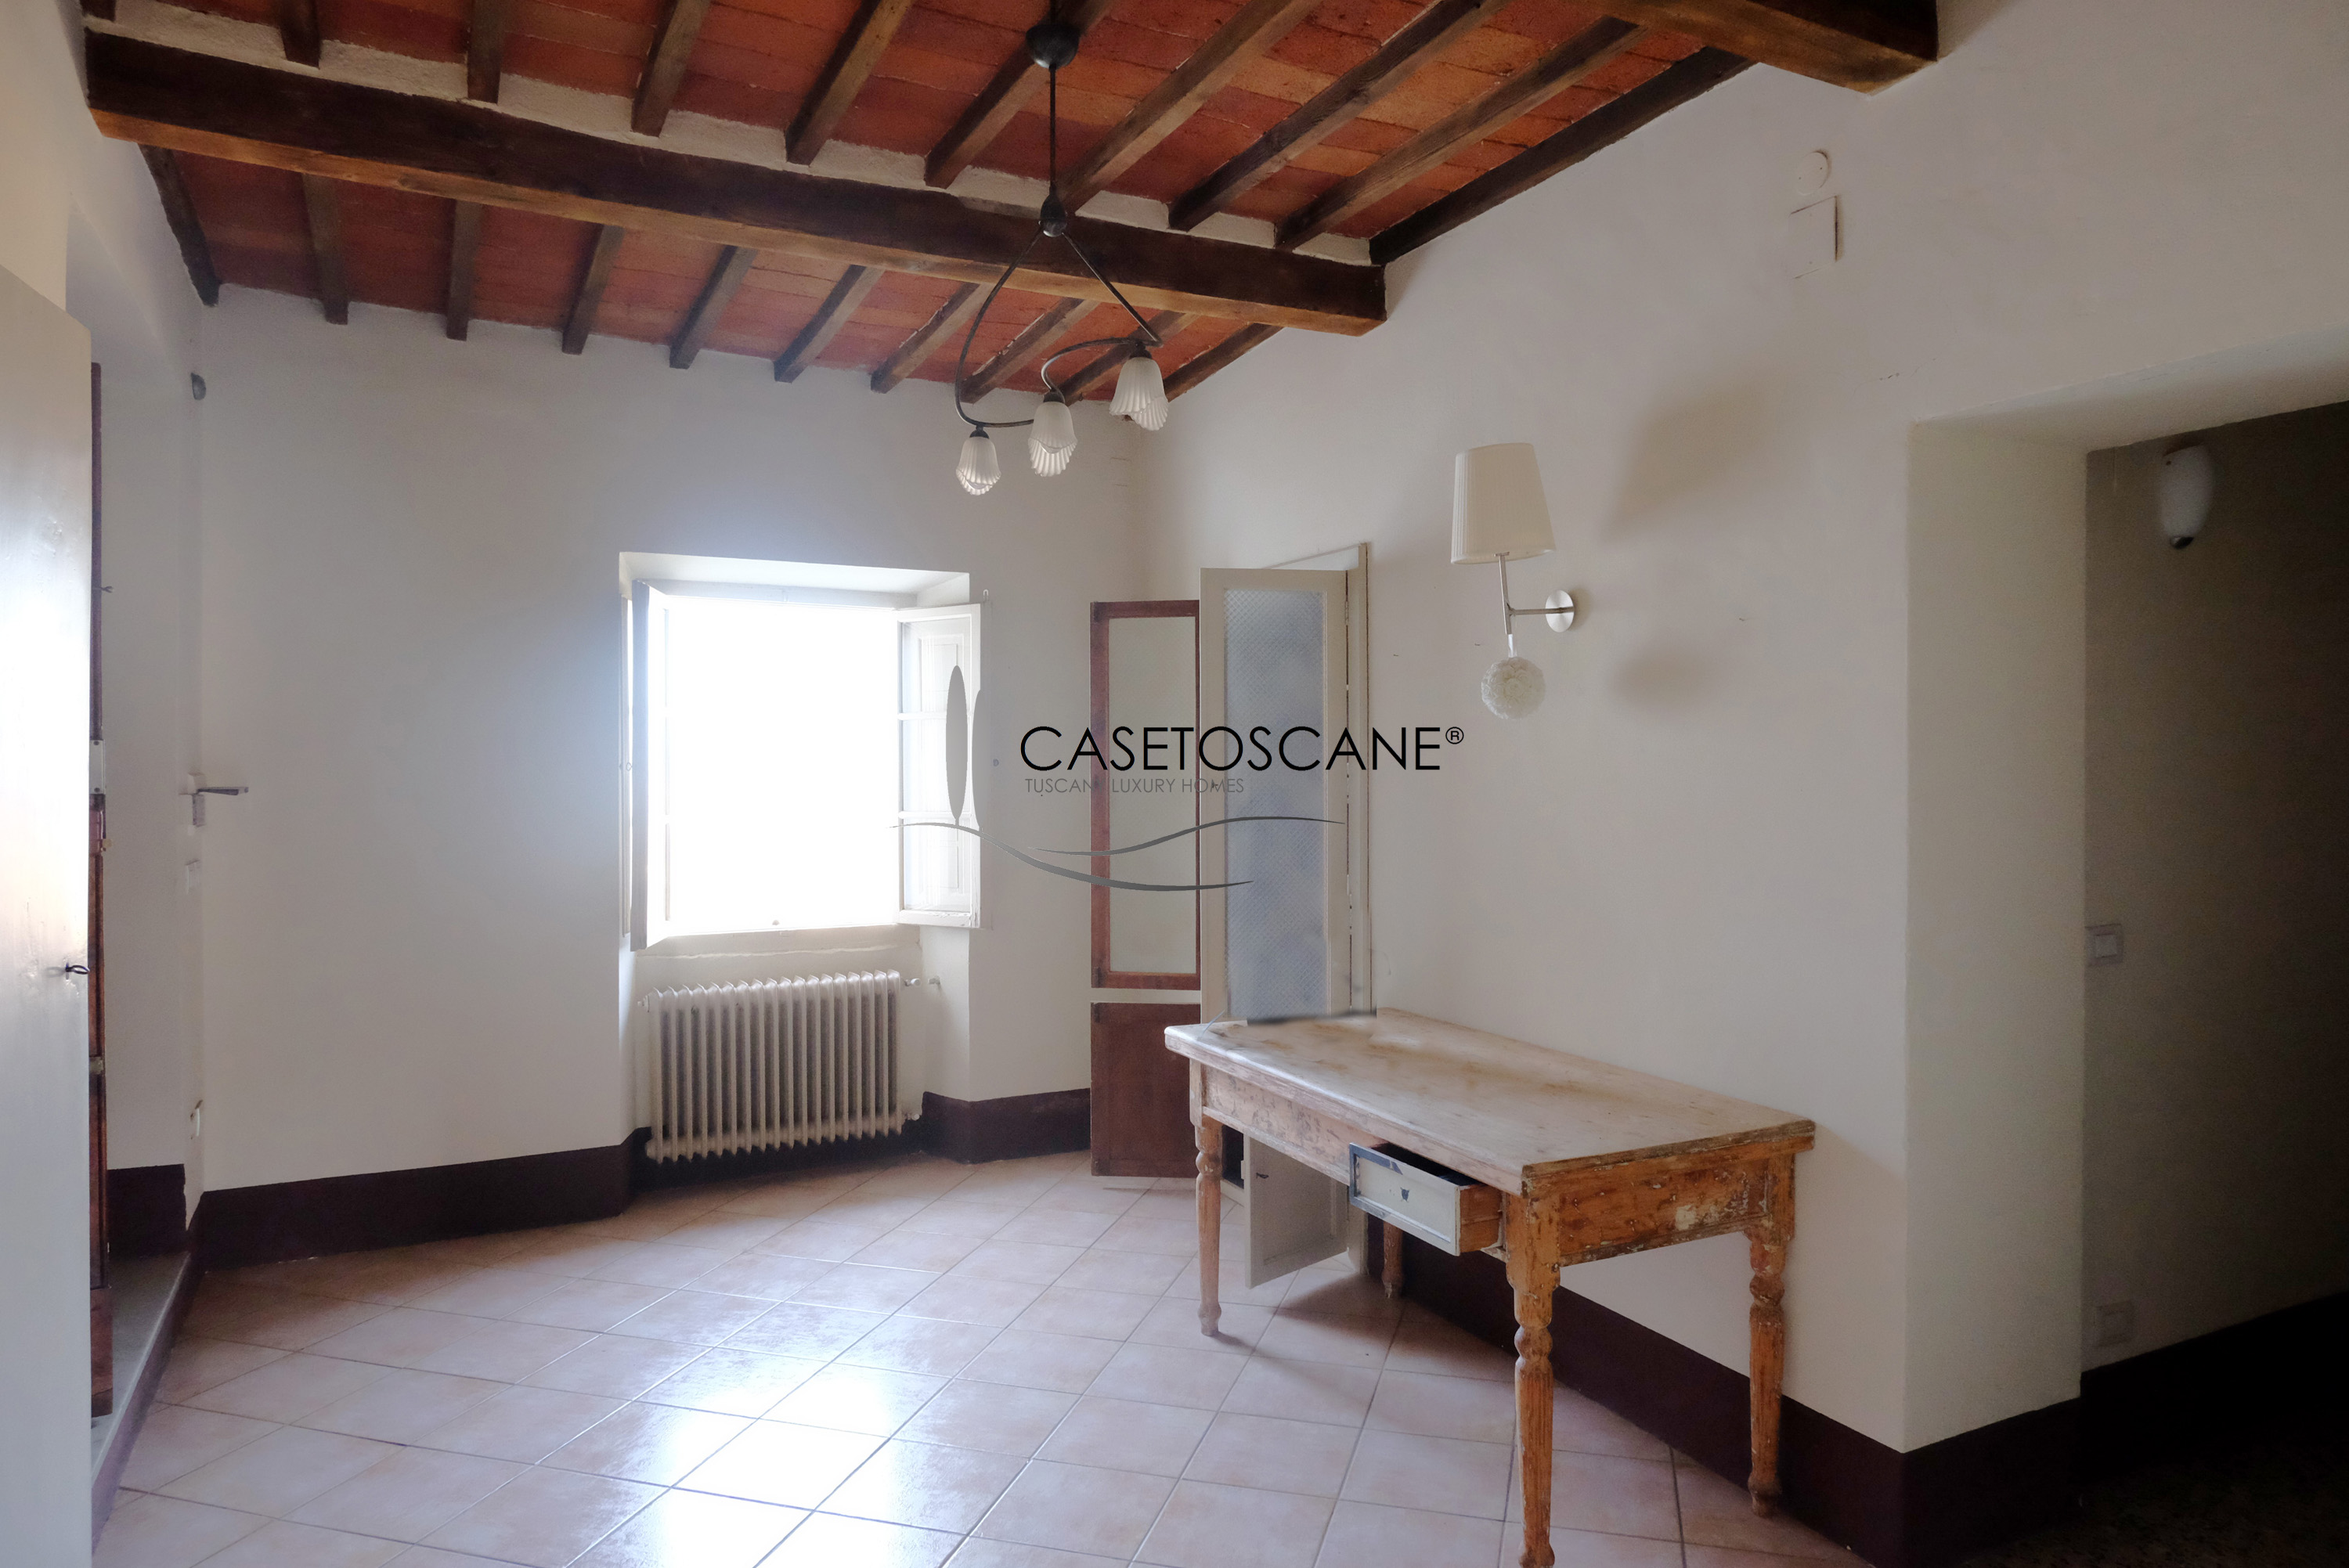 A756 - Appartamento di pregio di circa mq.130 in ottime condizioni, posto all'ultimo piano di un elegante edificio posto nel centro storico di Arezzo.